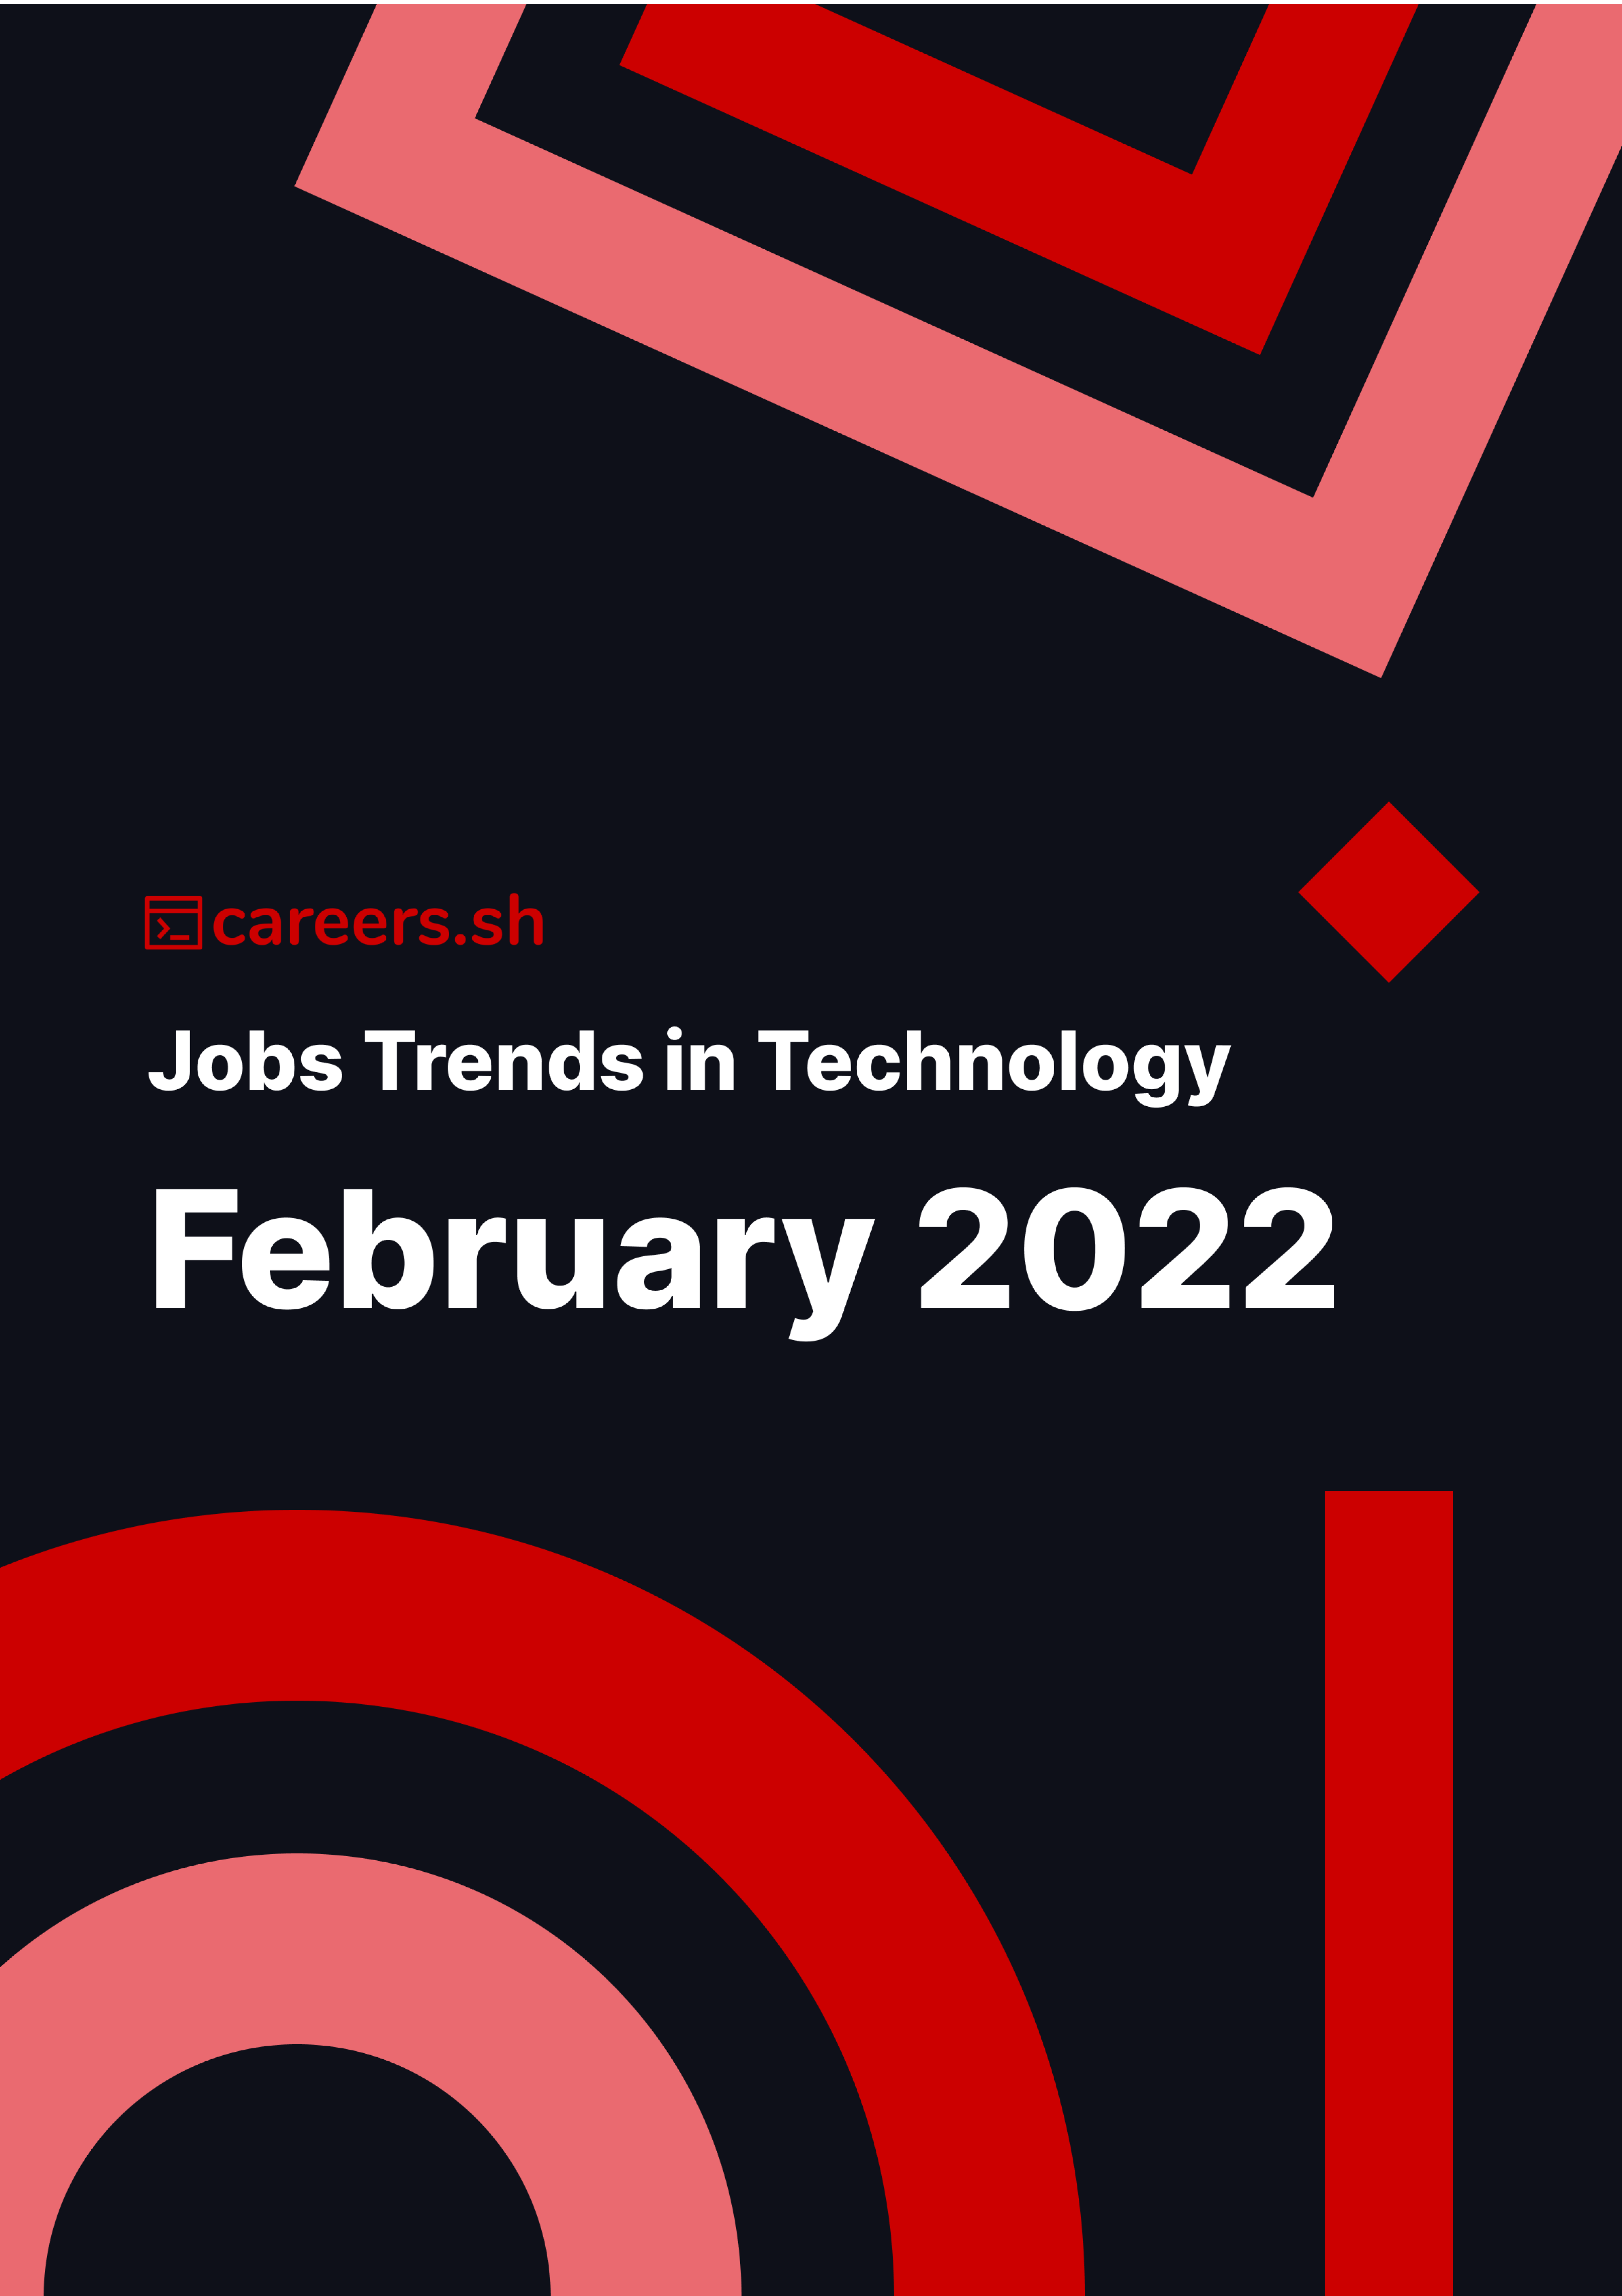 Careers.sh - February 2022